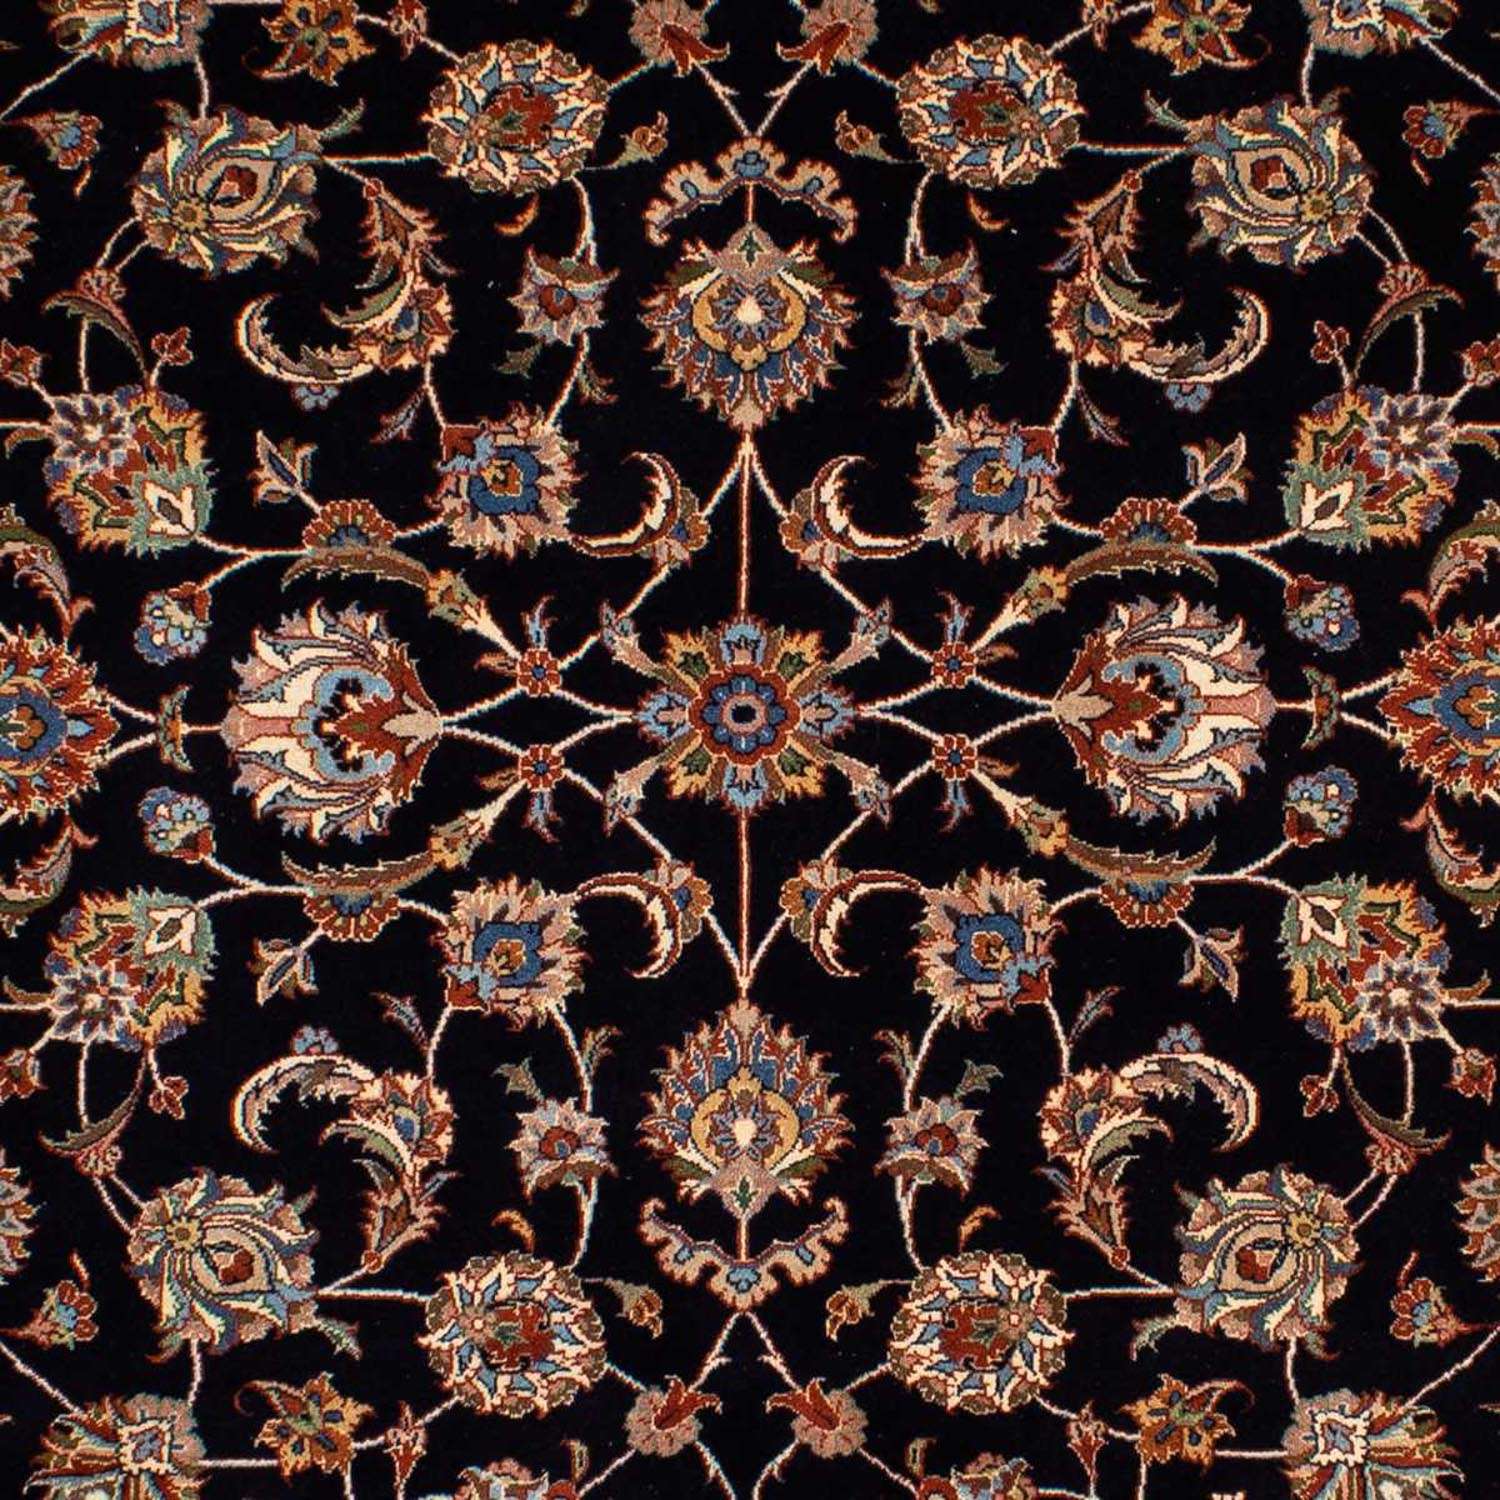 Perzisch tapijt - Klassiek - 286 x 204 cm - donkerblauw